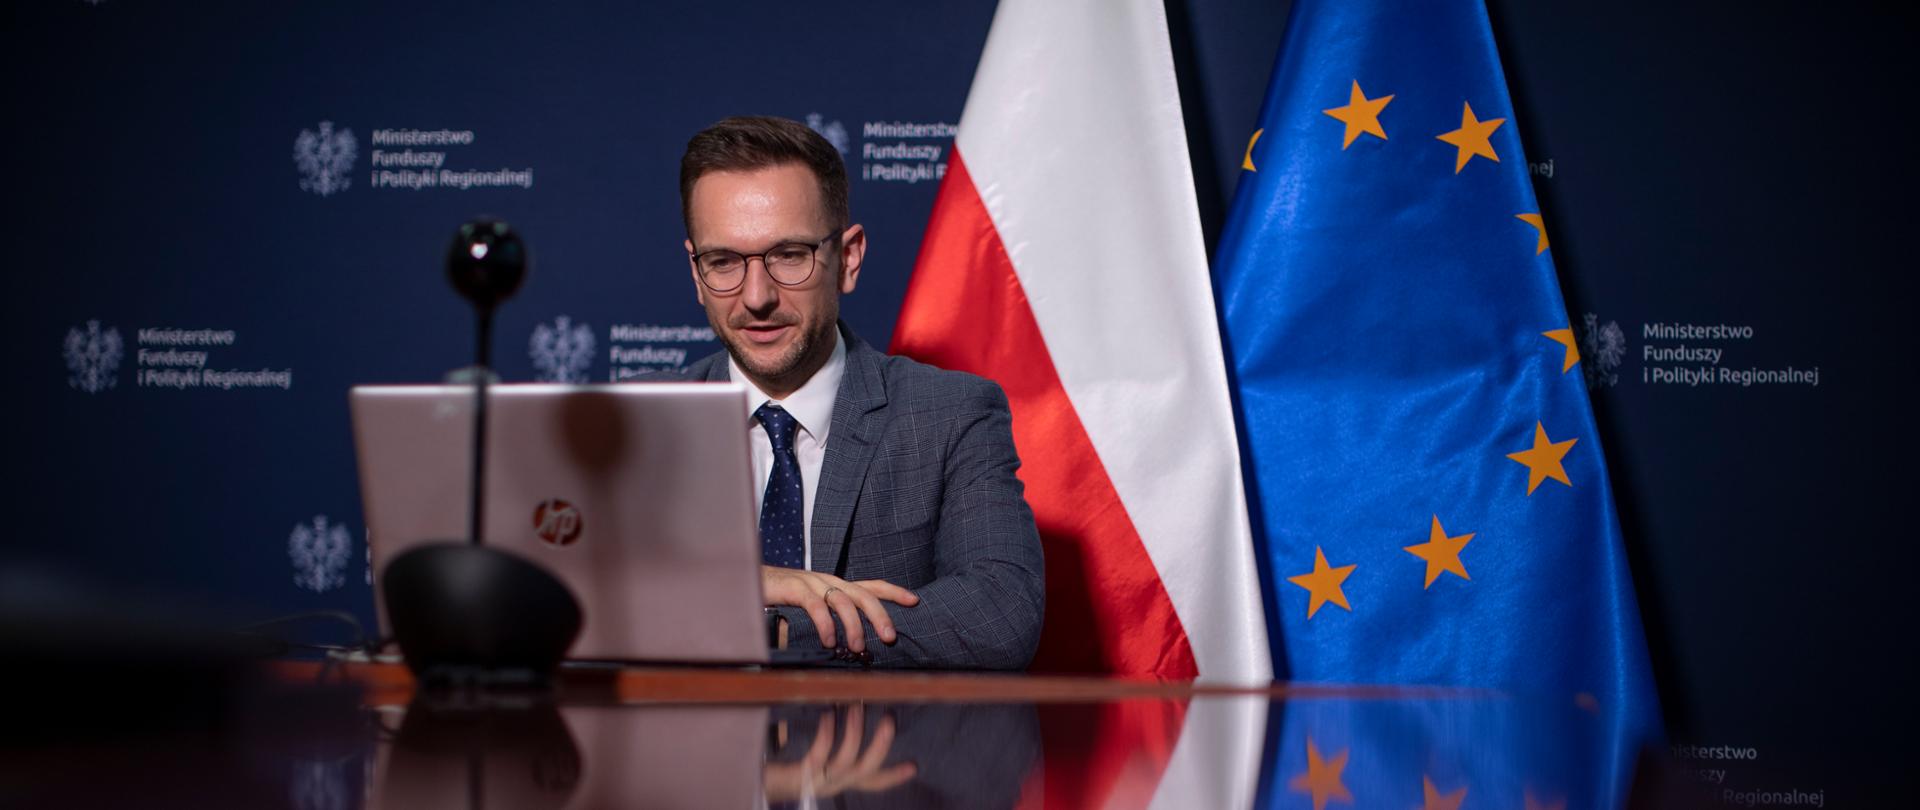 wiceminister Waldemar Buda siedzi przy komputerze za nim flagi Polski i Unii Europejskiej